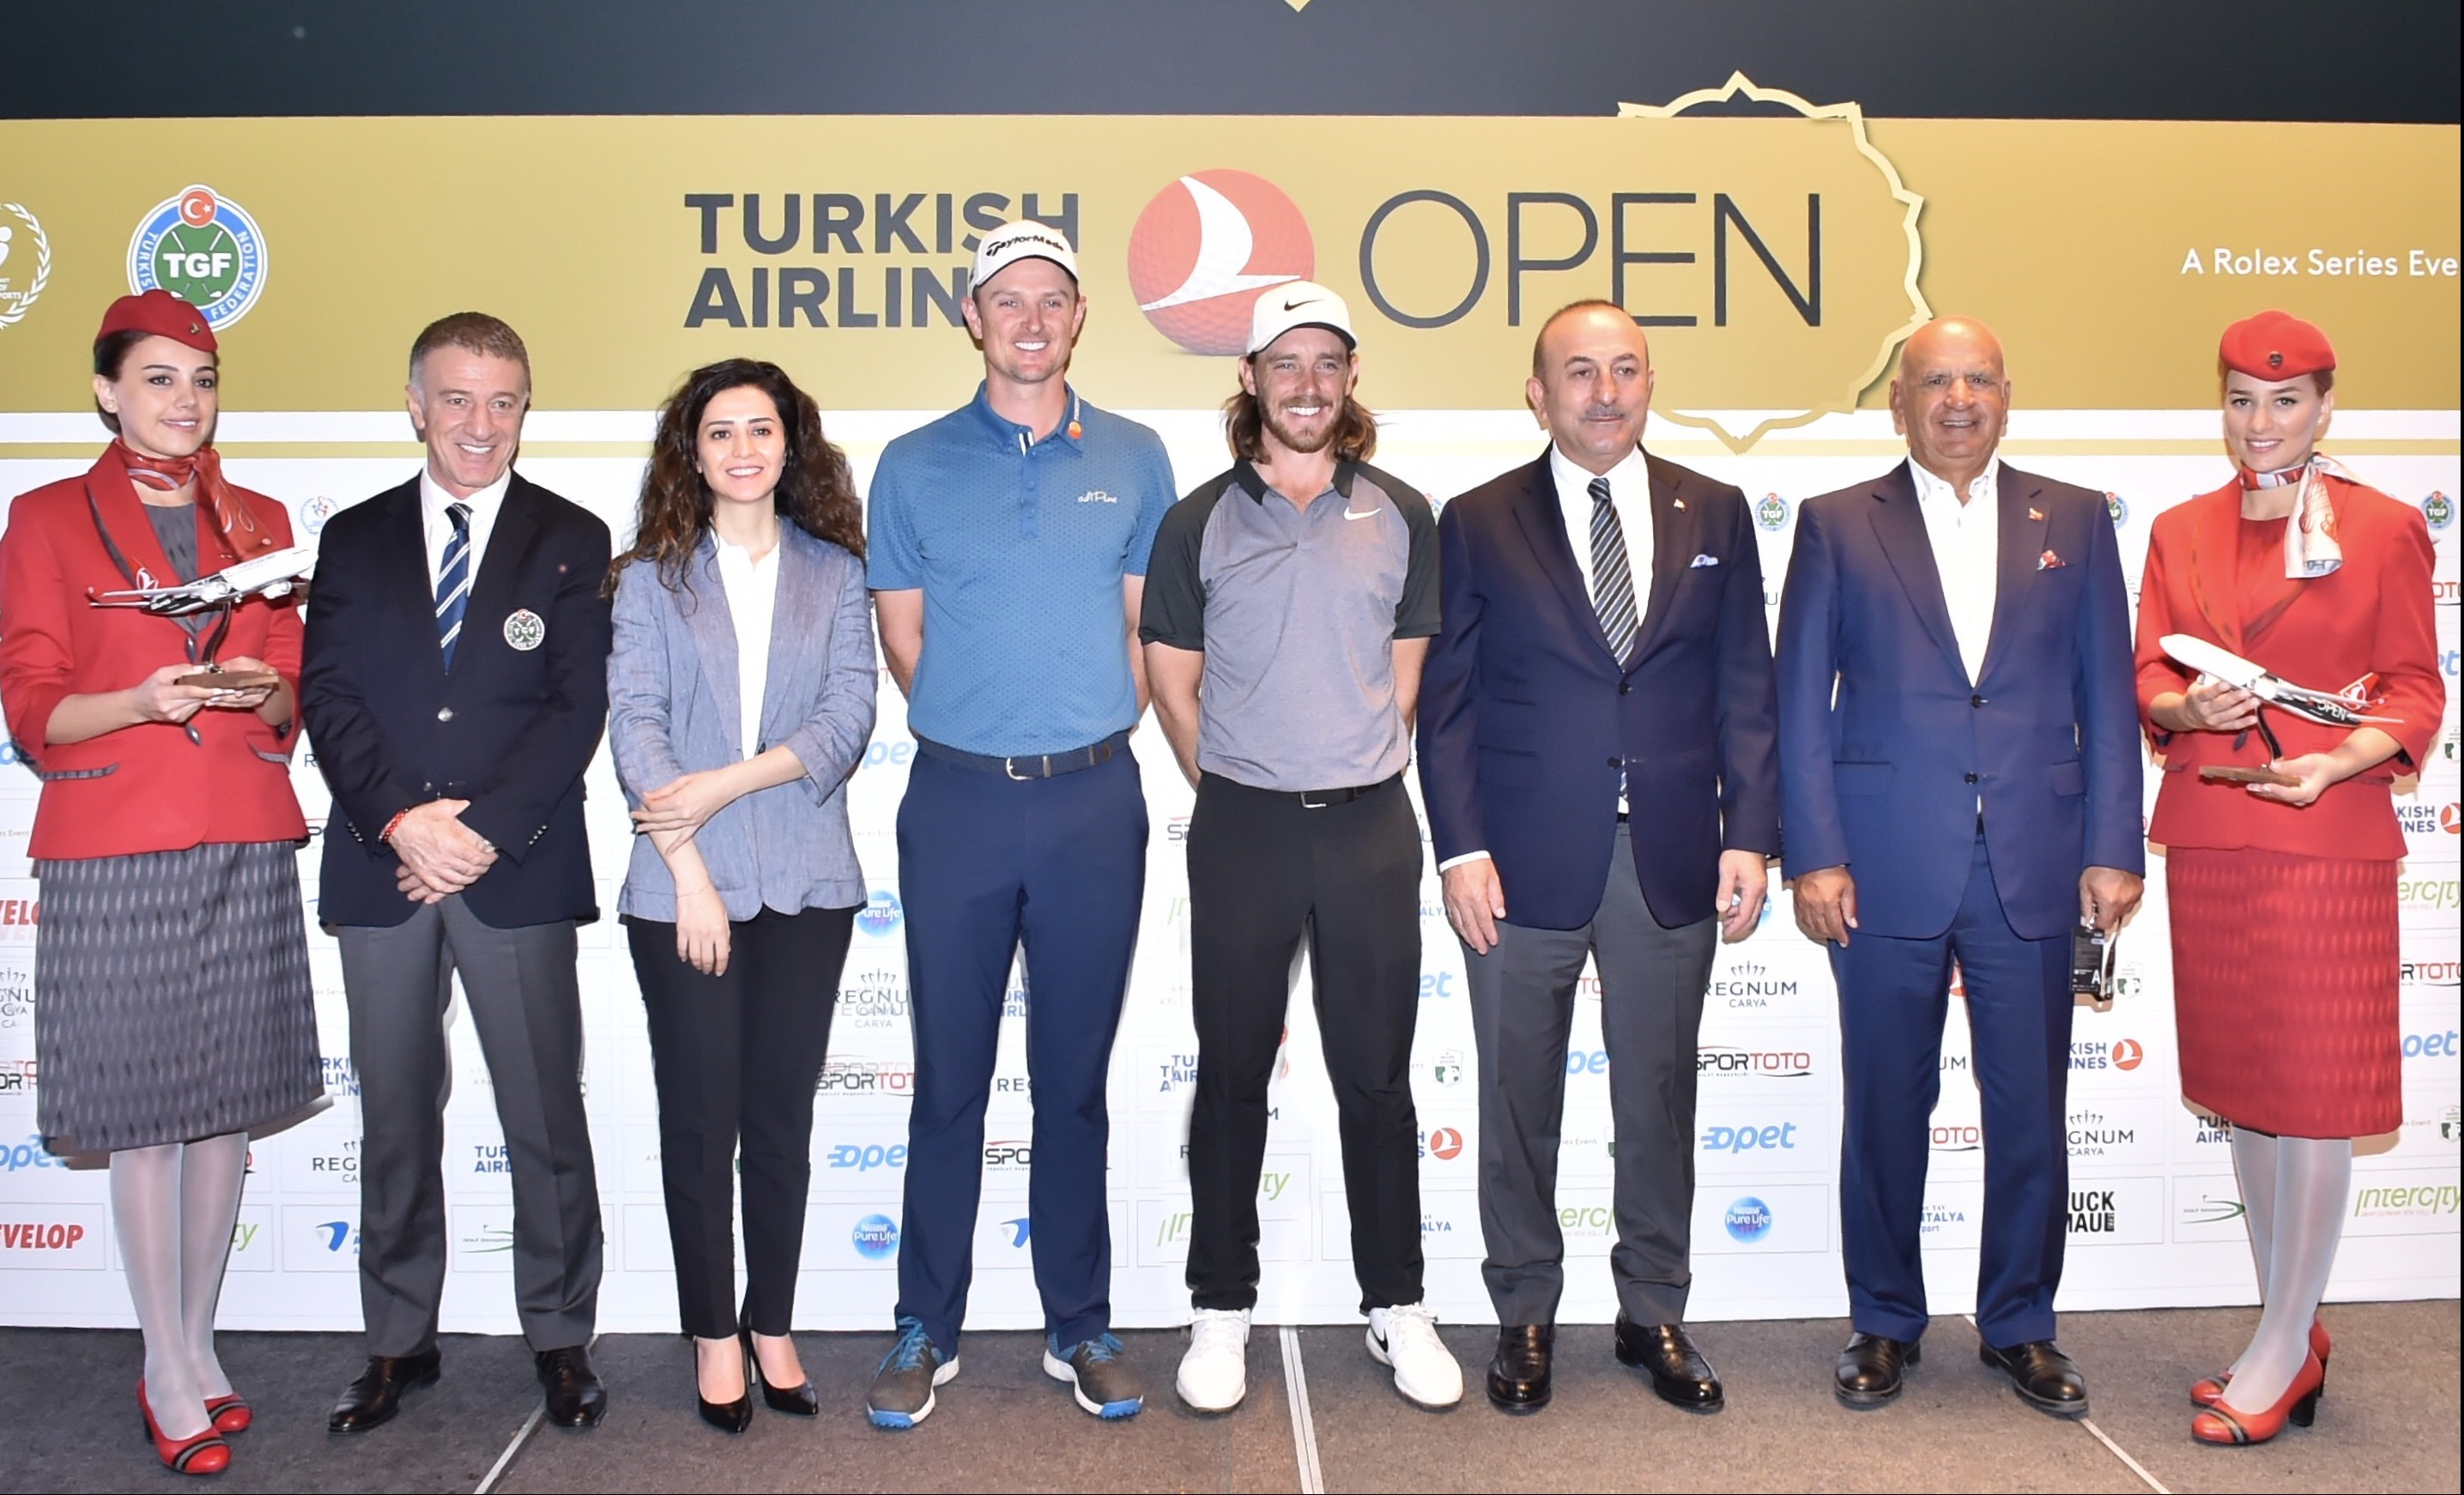 منافسات بطولة الخطوط الجوية التركية المفتوحة للغولف